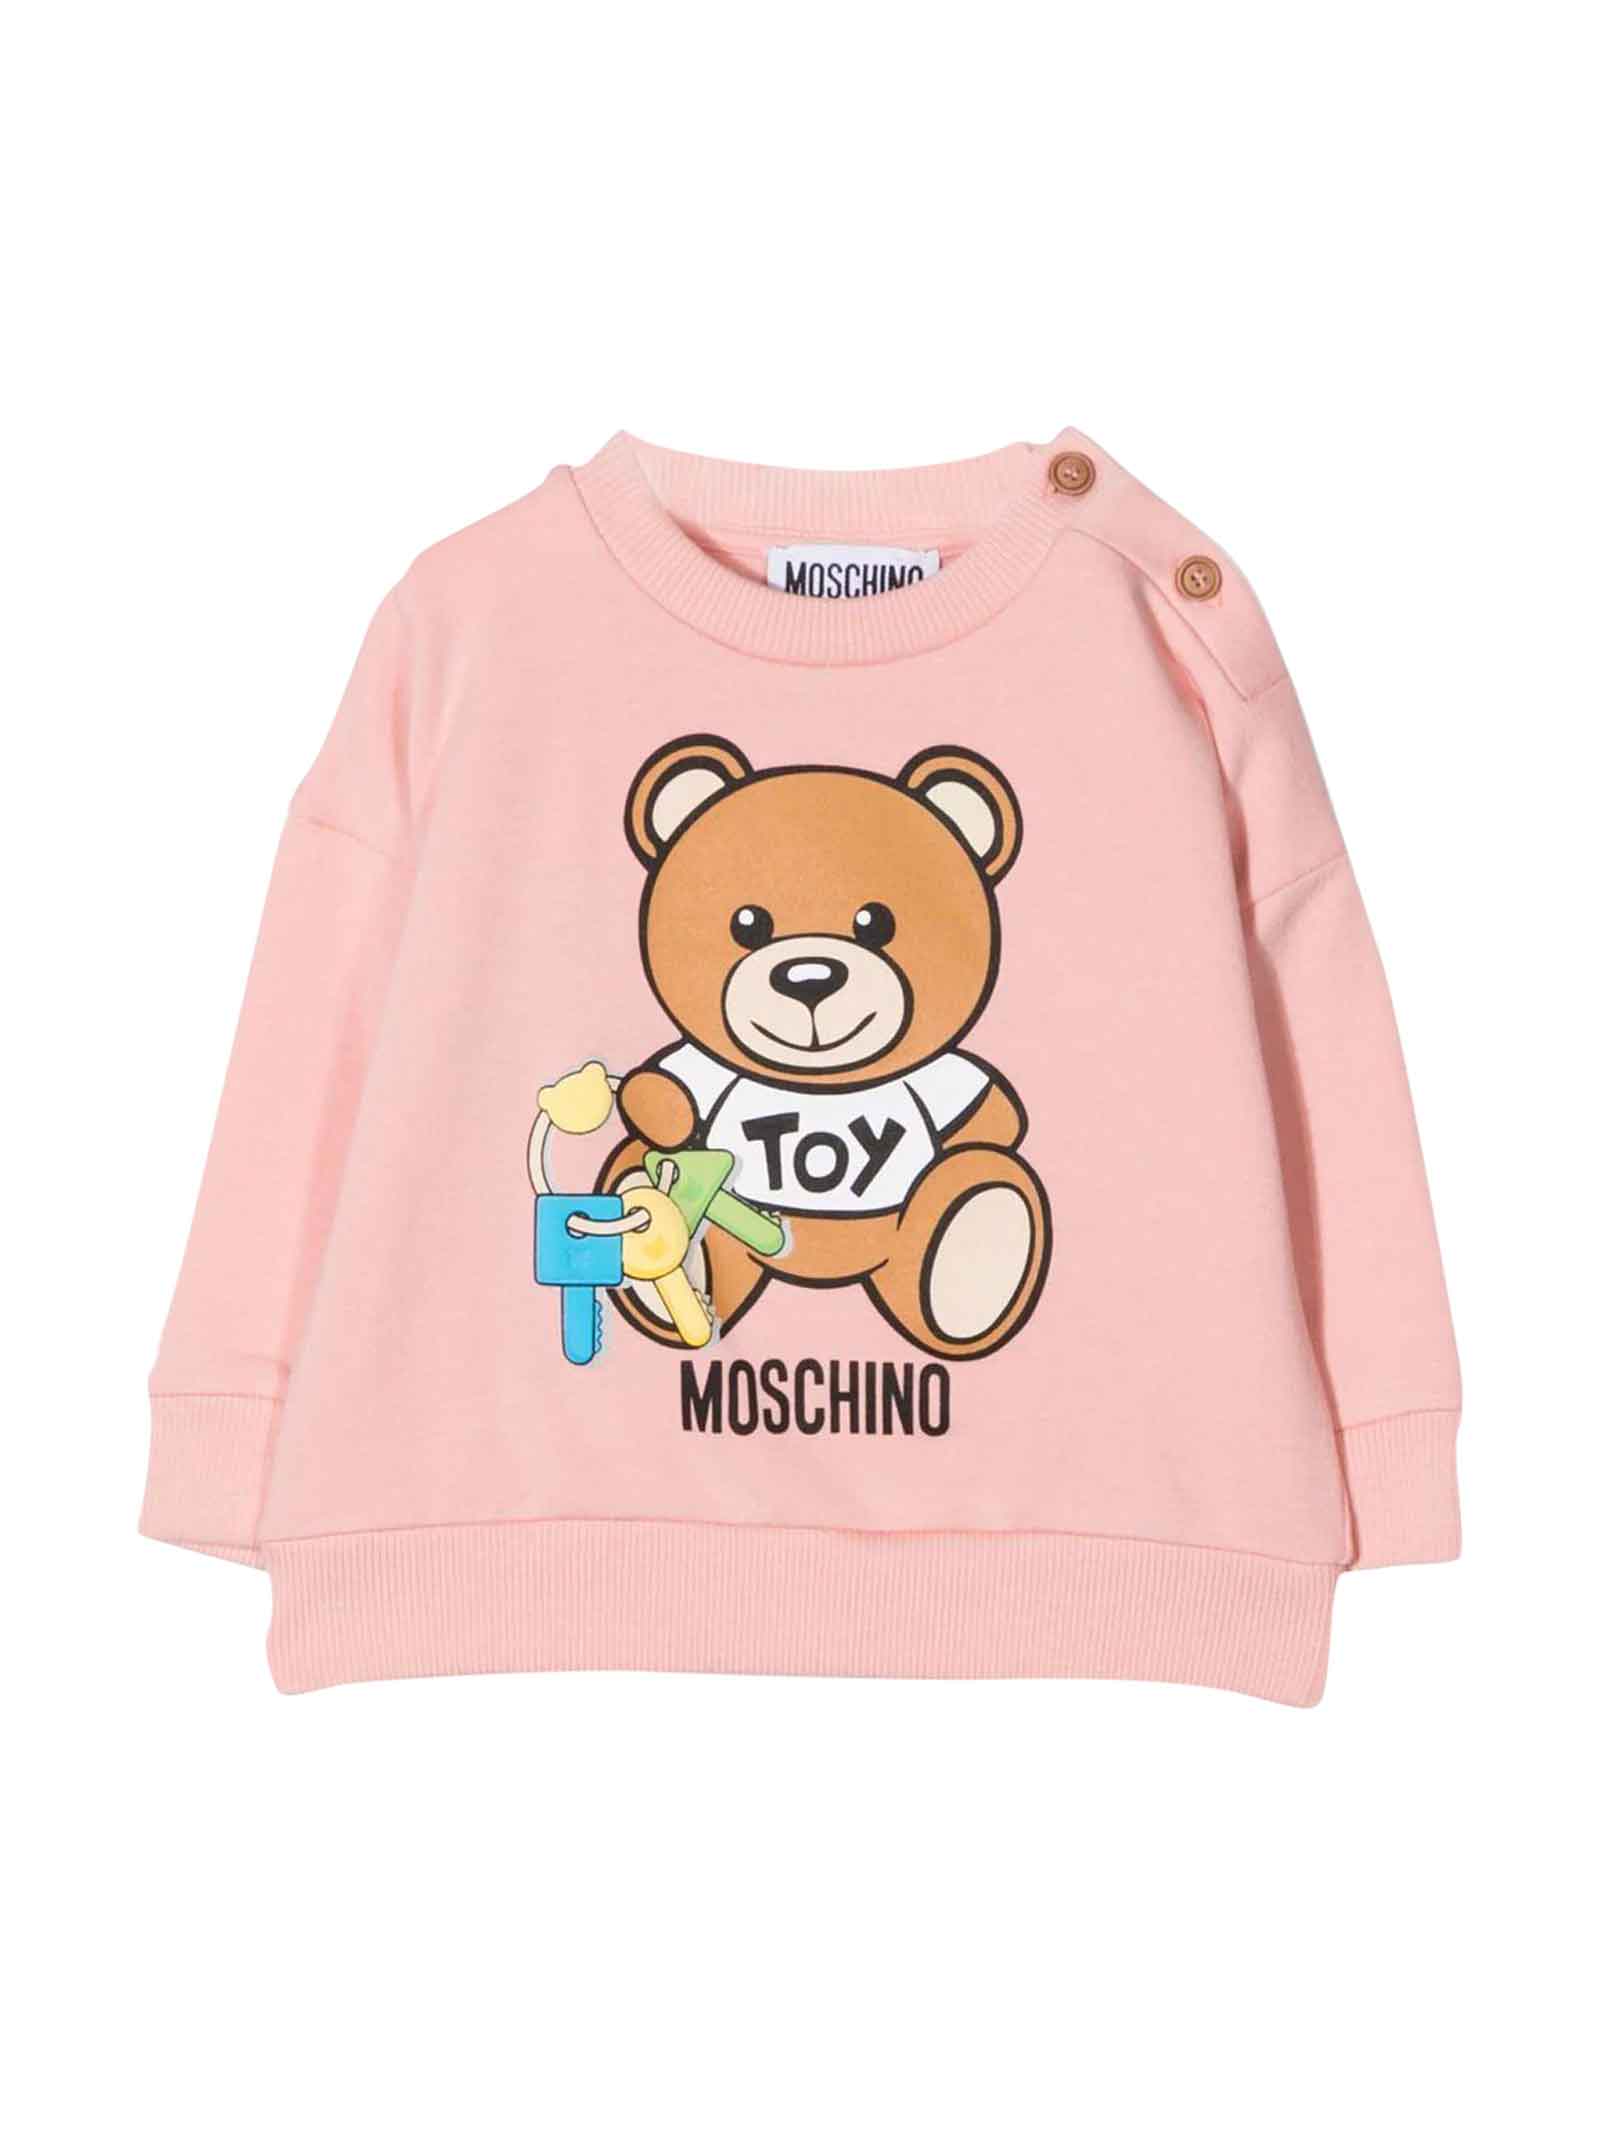 Moschino Newborn Pink Sweatshirt